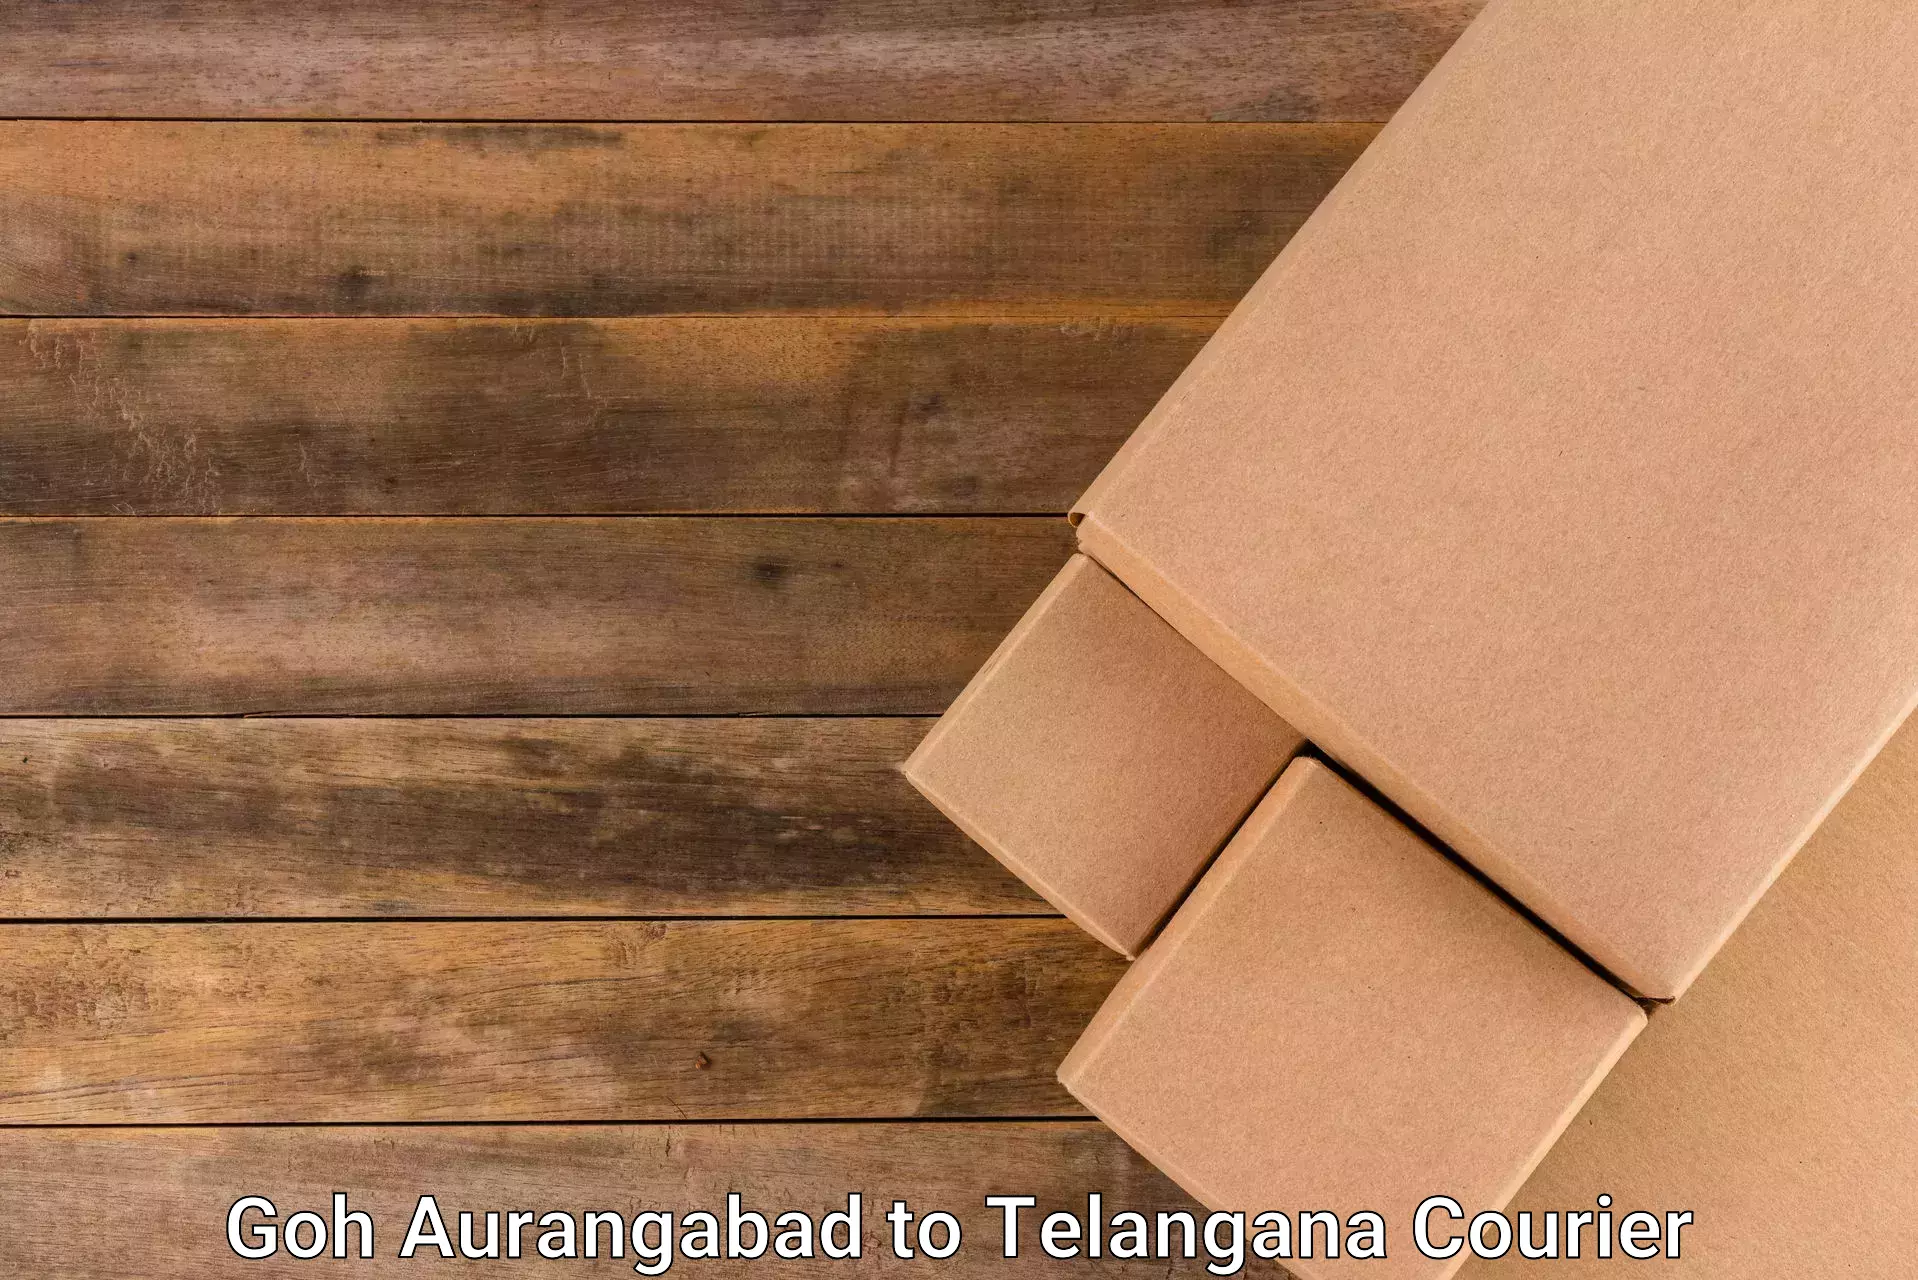 Package forwarding Goh Aurangabad to Gollapalli